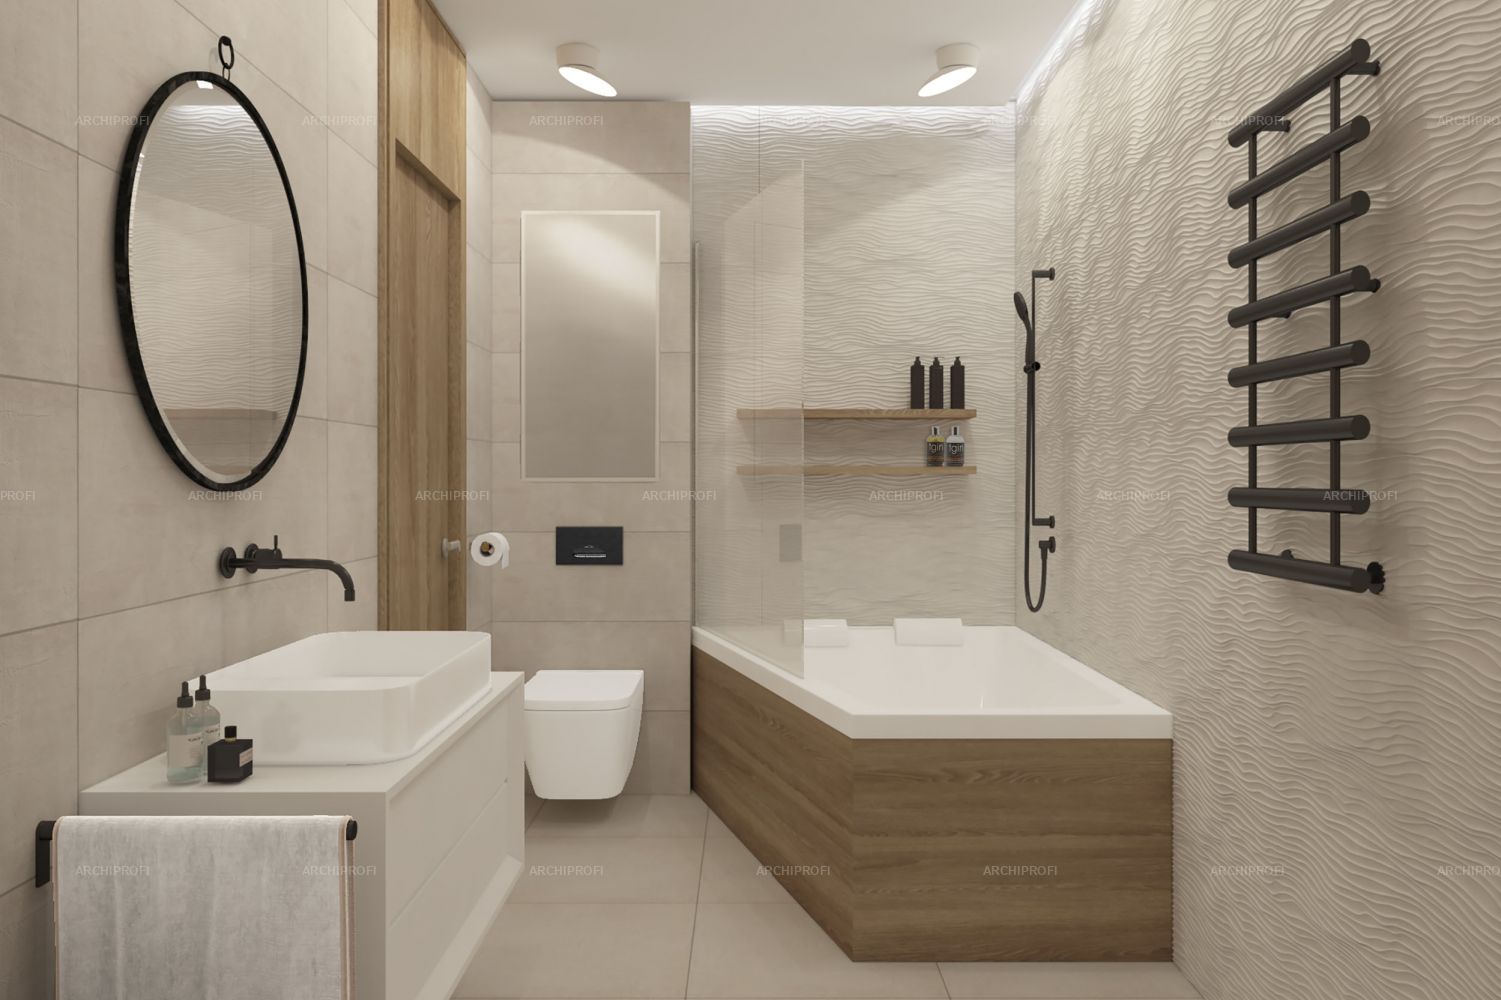 3D интерьера, Ванная комната площадью 6 кв.м. в стиле Современная. Проект Sky House - Sky House, Автор проекта: Дизайнеры Александра Останкова